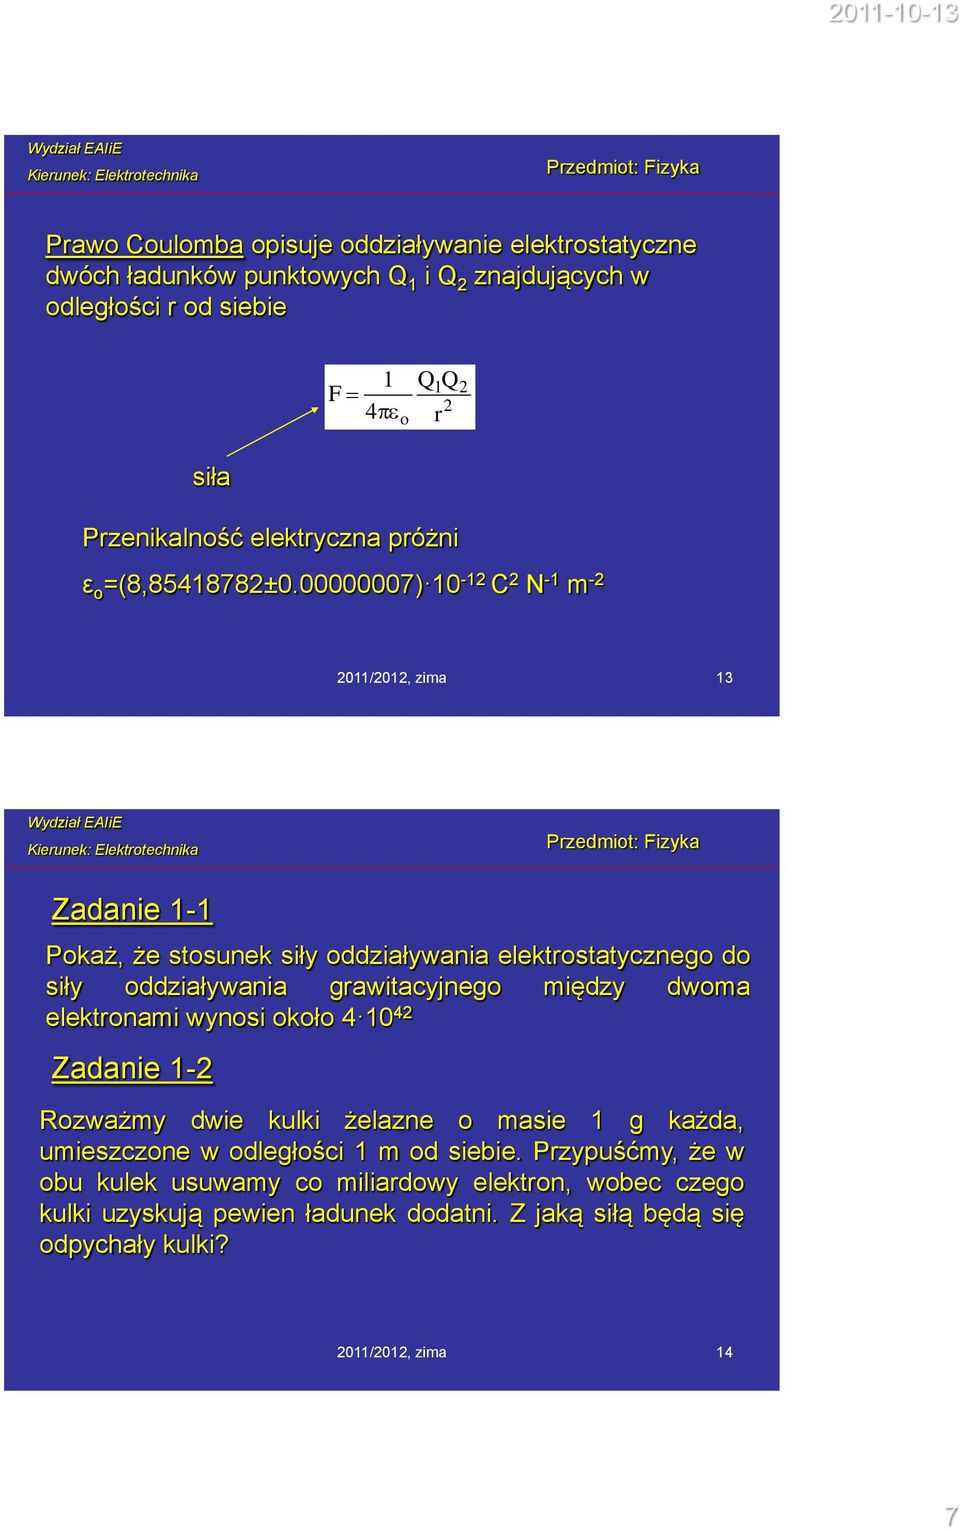 00000007) 10-12 C 2 N -1 m -2 2011/2012, zima 13 Zadanie 1-1 Pokaż, że stosunek siły oddziaływania elektrostatycznego do siły oddziaływania grawitacyjnego między dwoma